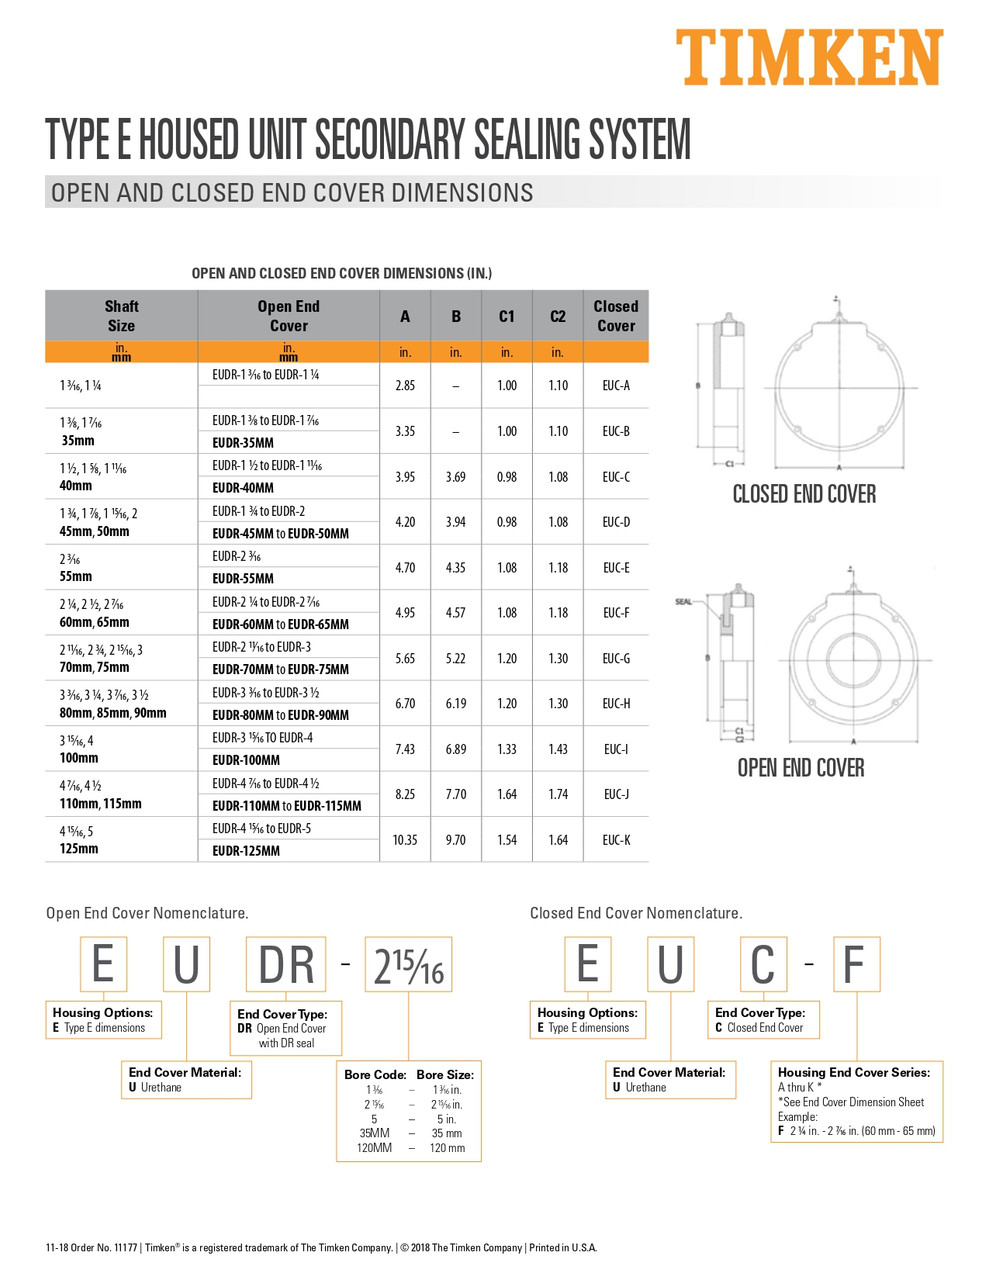 5" Type-E Bearing Open End Cover  EUDR-5